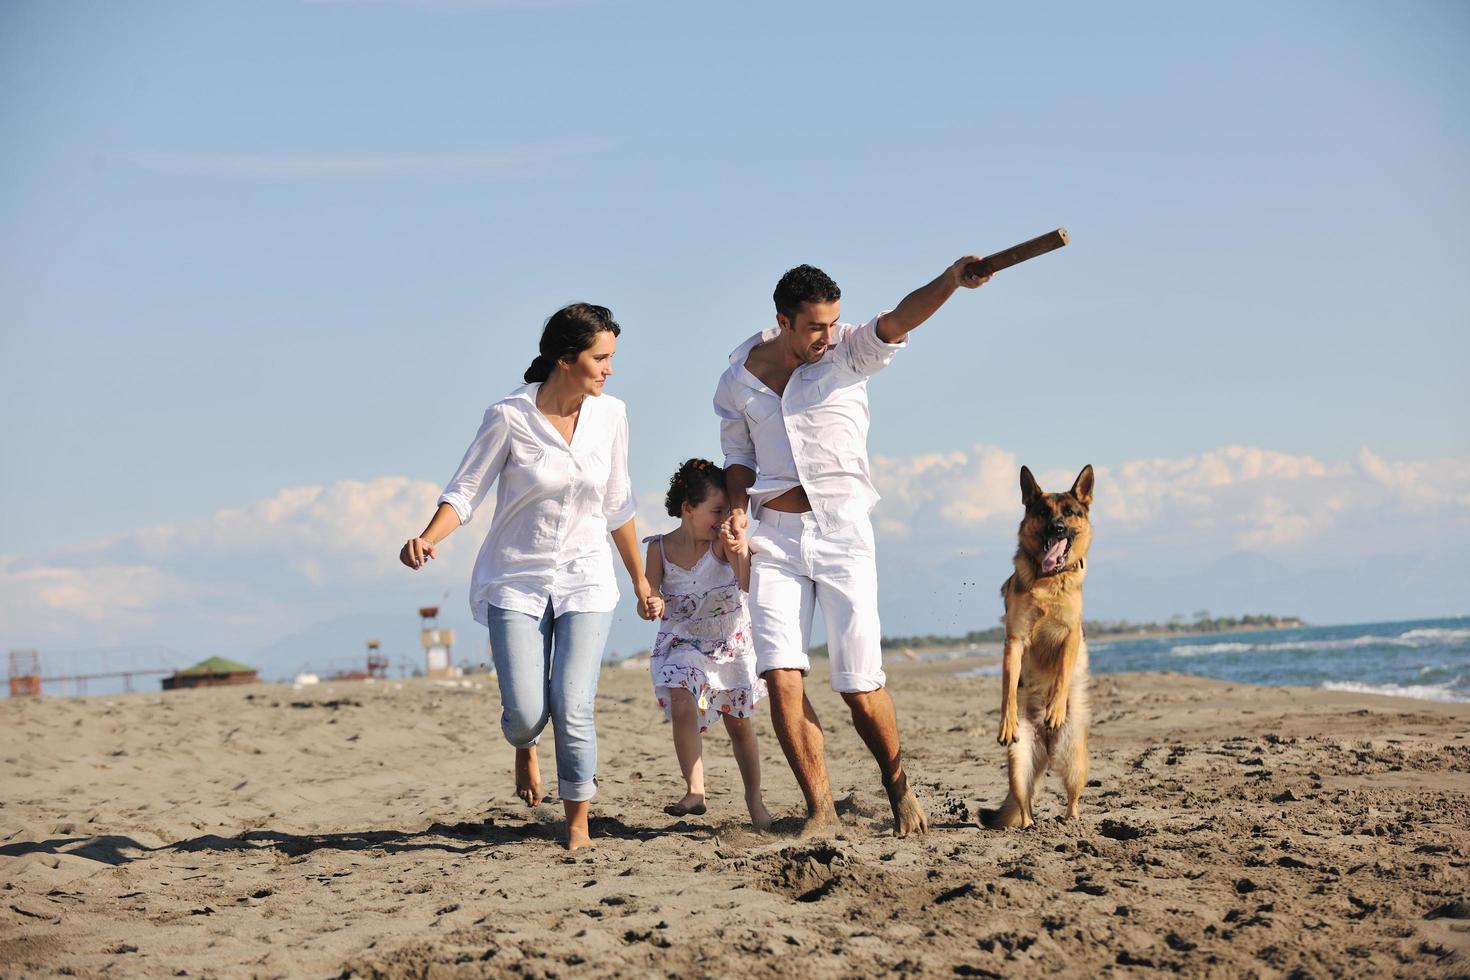 famille heureuse jouant avec un chien sur la plage photo